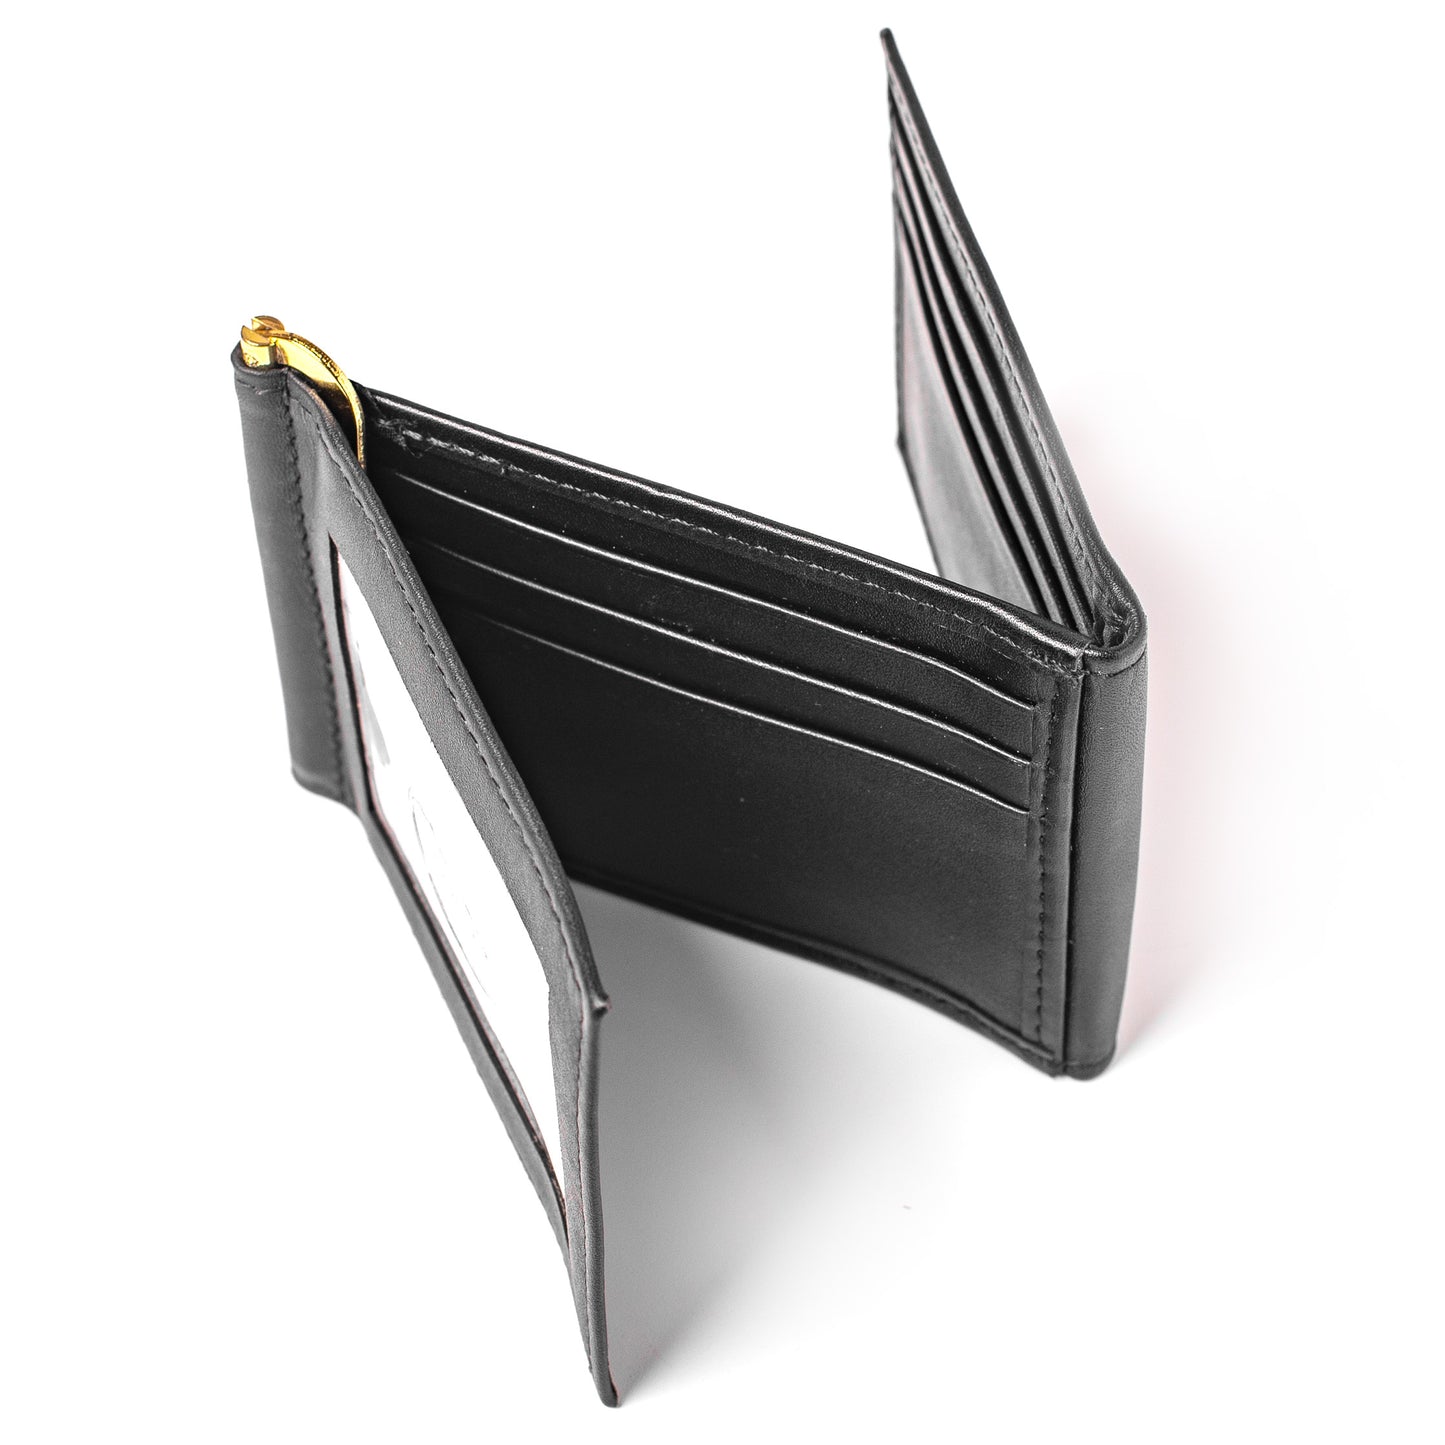 Z-Fold Leather Wallet